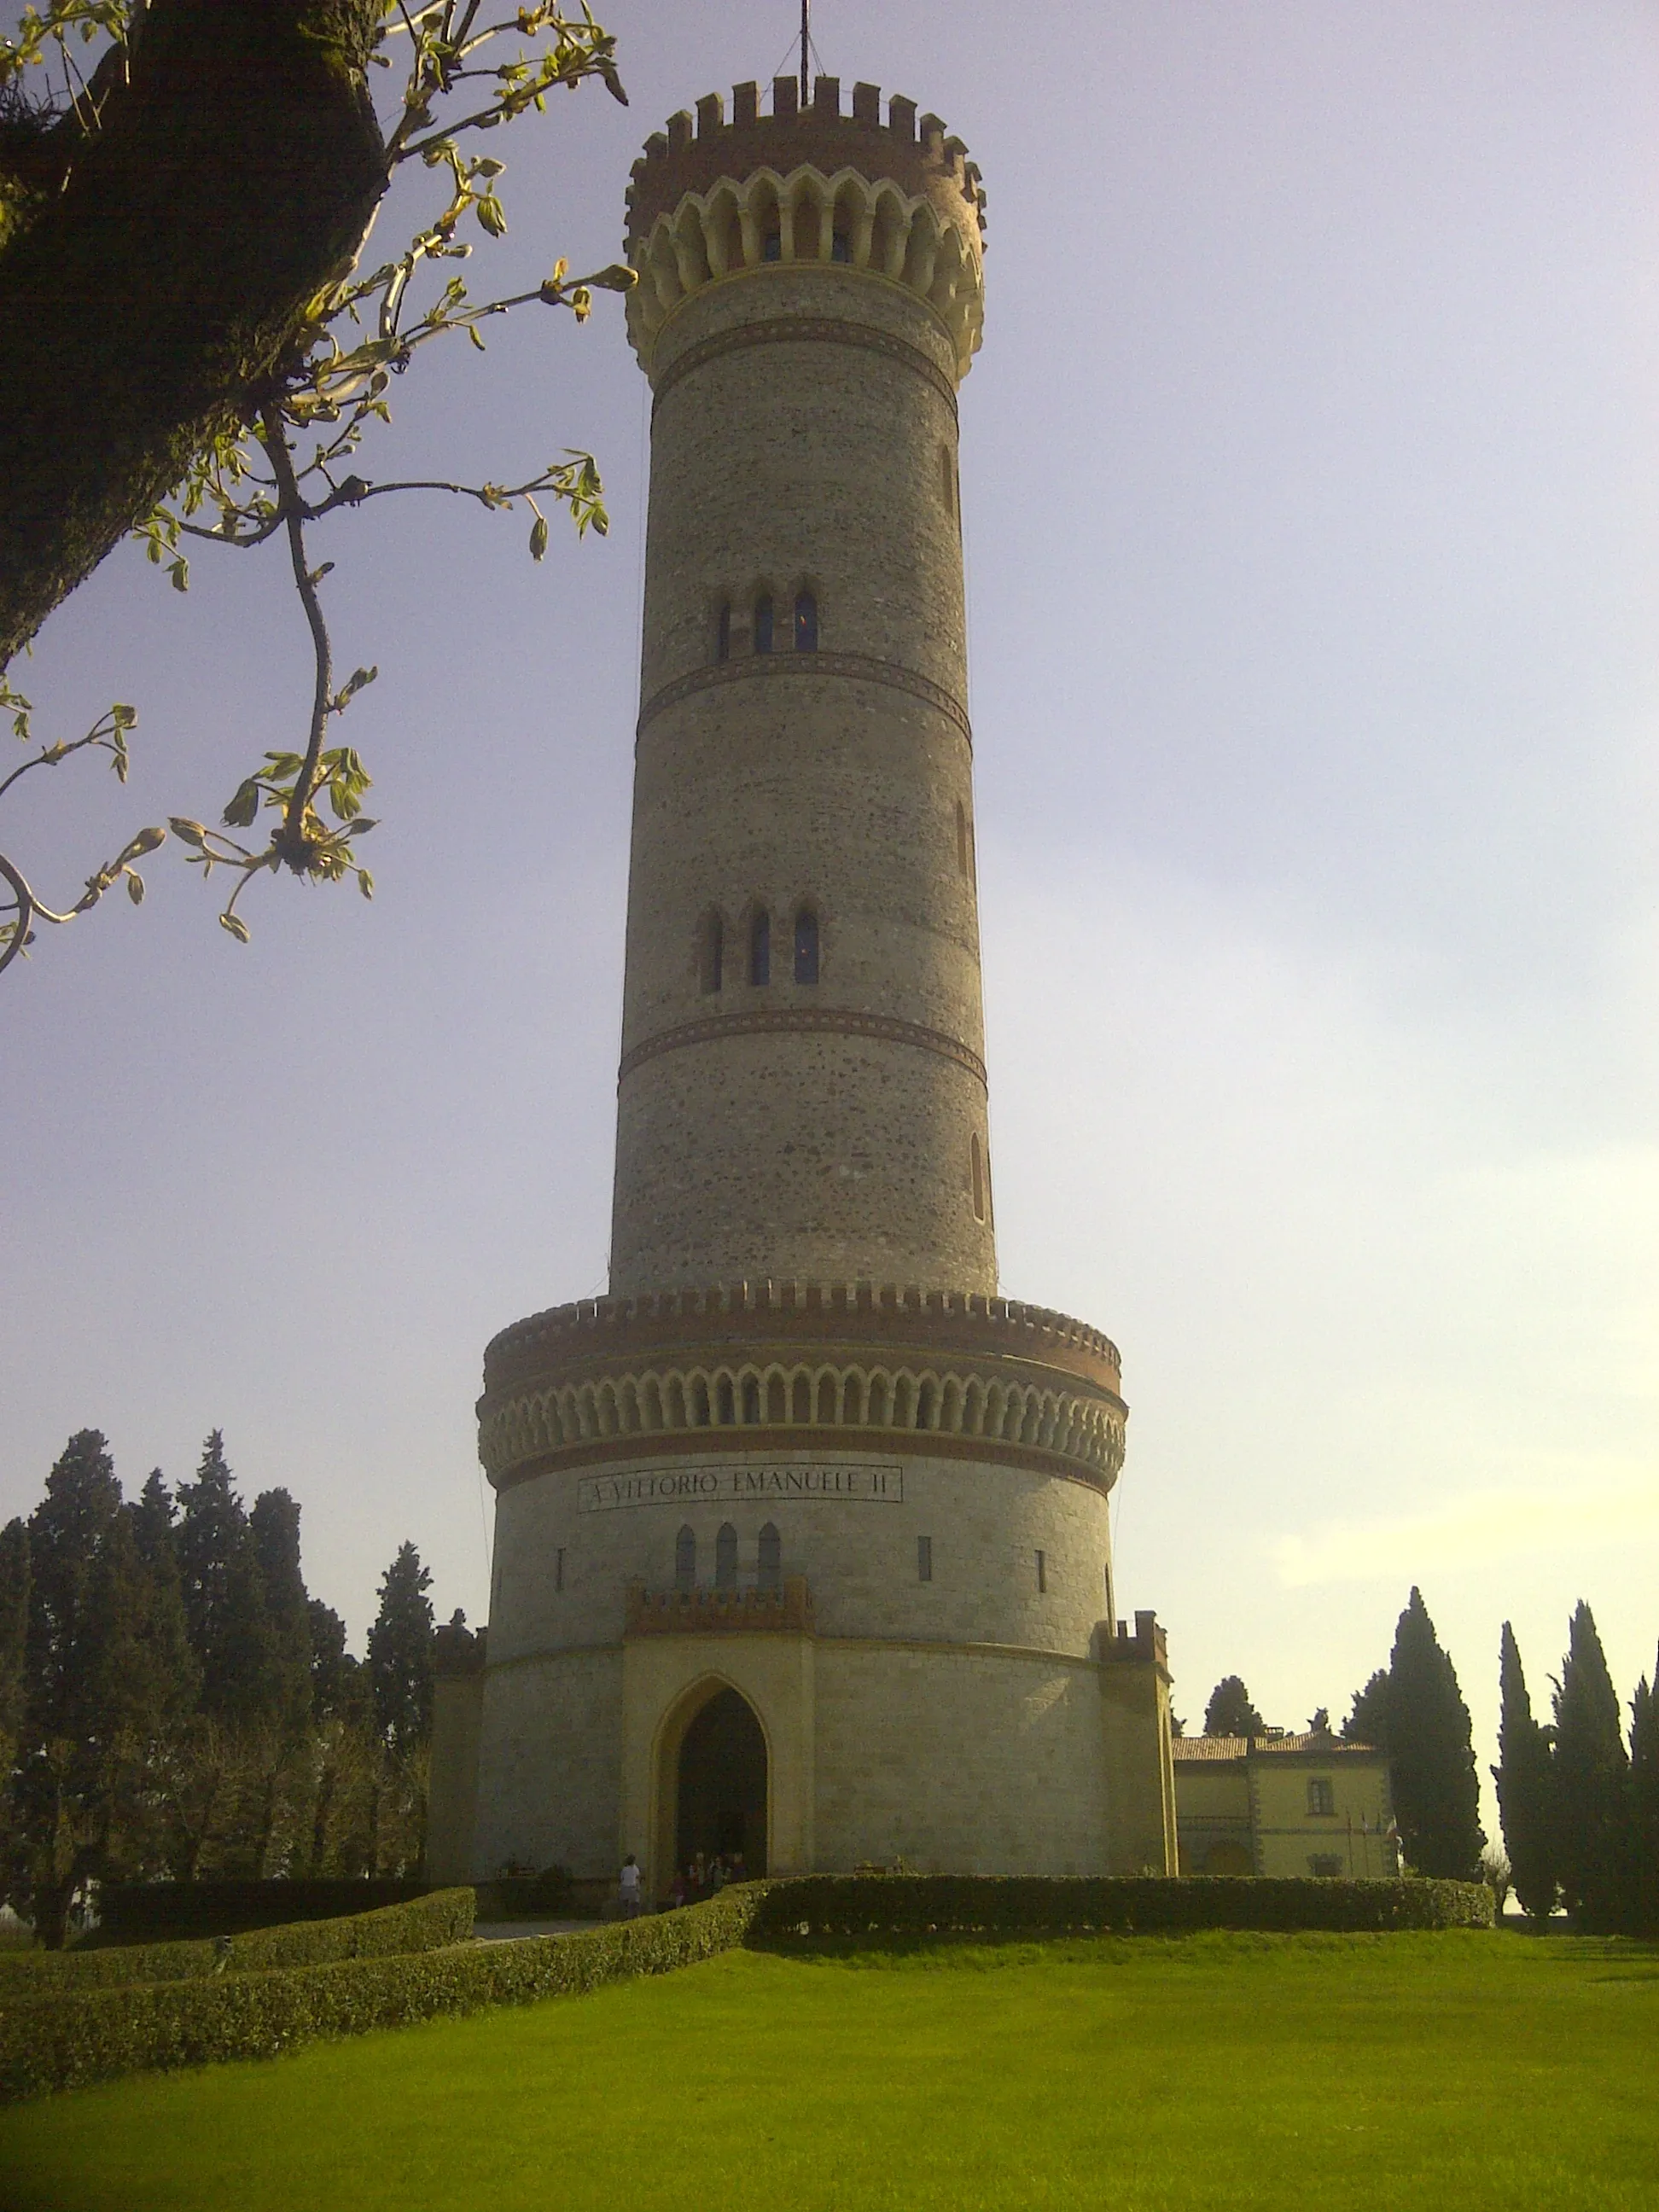 Photo showing: Torre monumentale. Alta 74 m, fu costruita nel 1880 ed inaugurata il 15 ottobre 1893. Eretta per onorare la memoria di Vittorio Emanuele II e di coloro che hanno combattuto per l'indipendenza e l'Unità d'Italia nelle guerre dal 1848 al 1870.